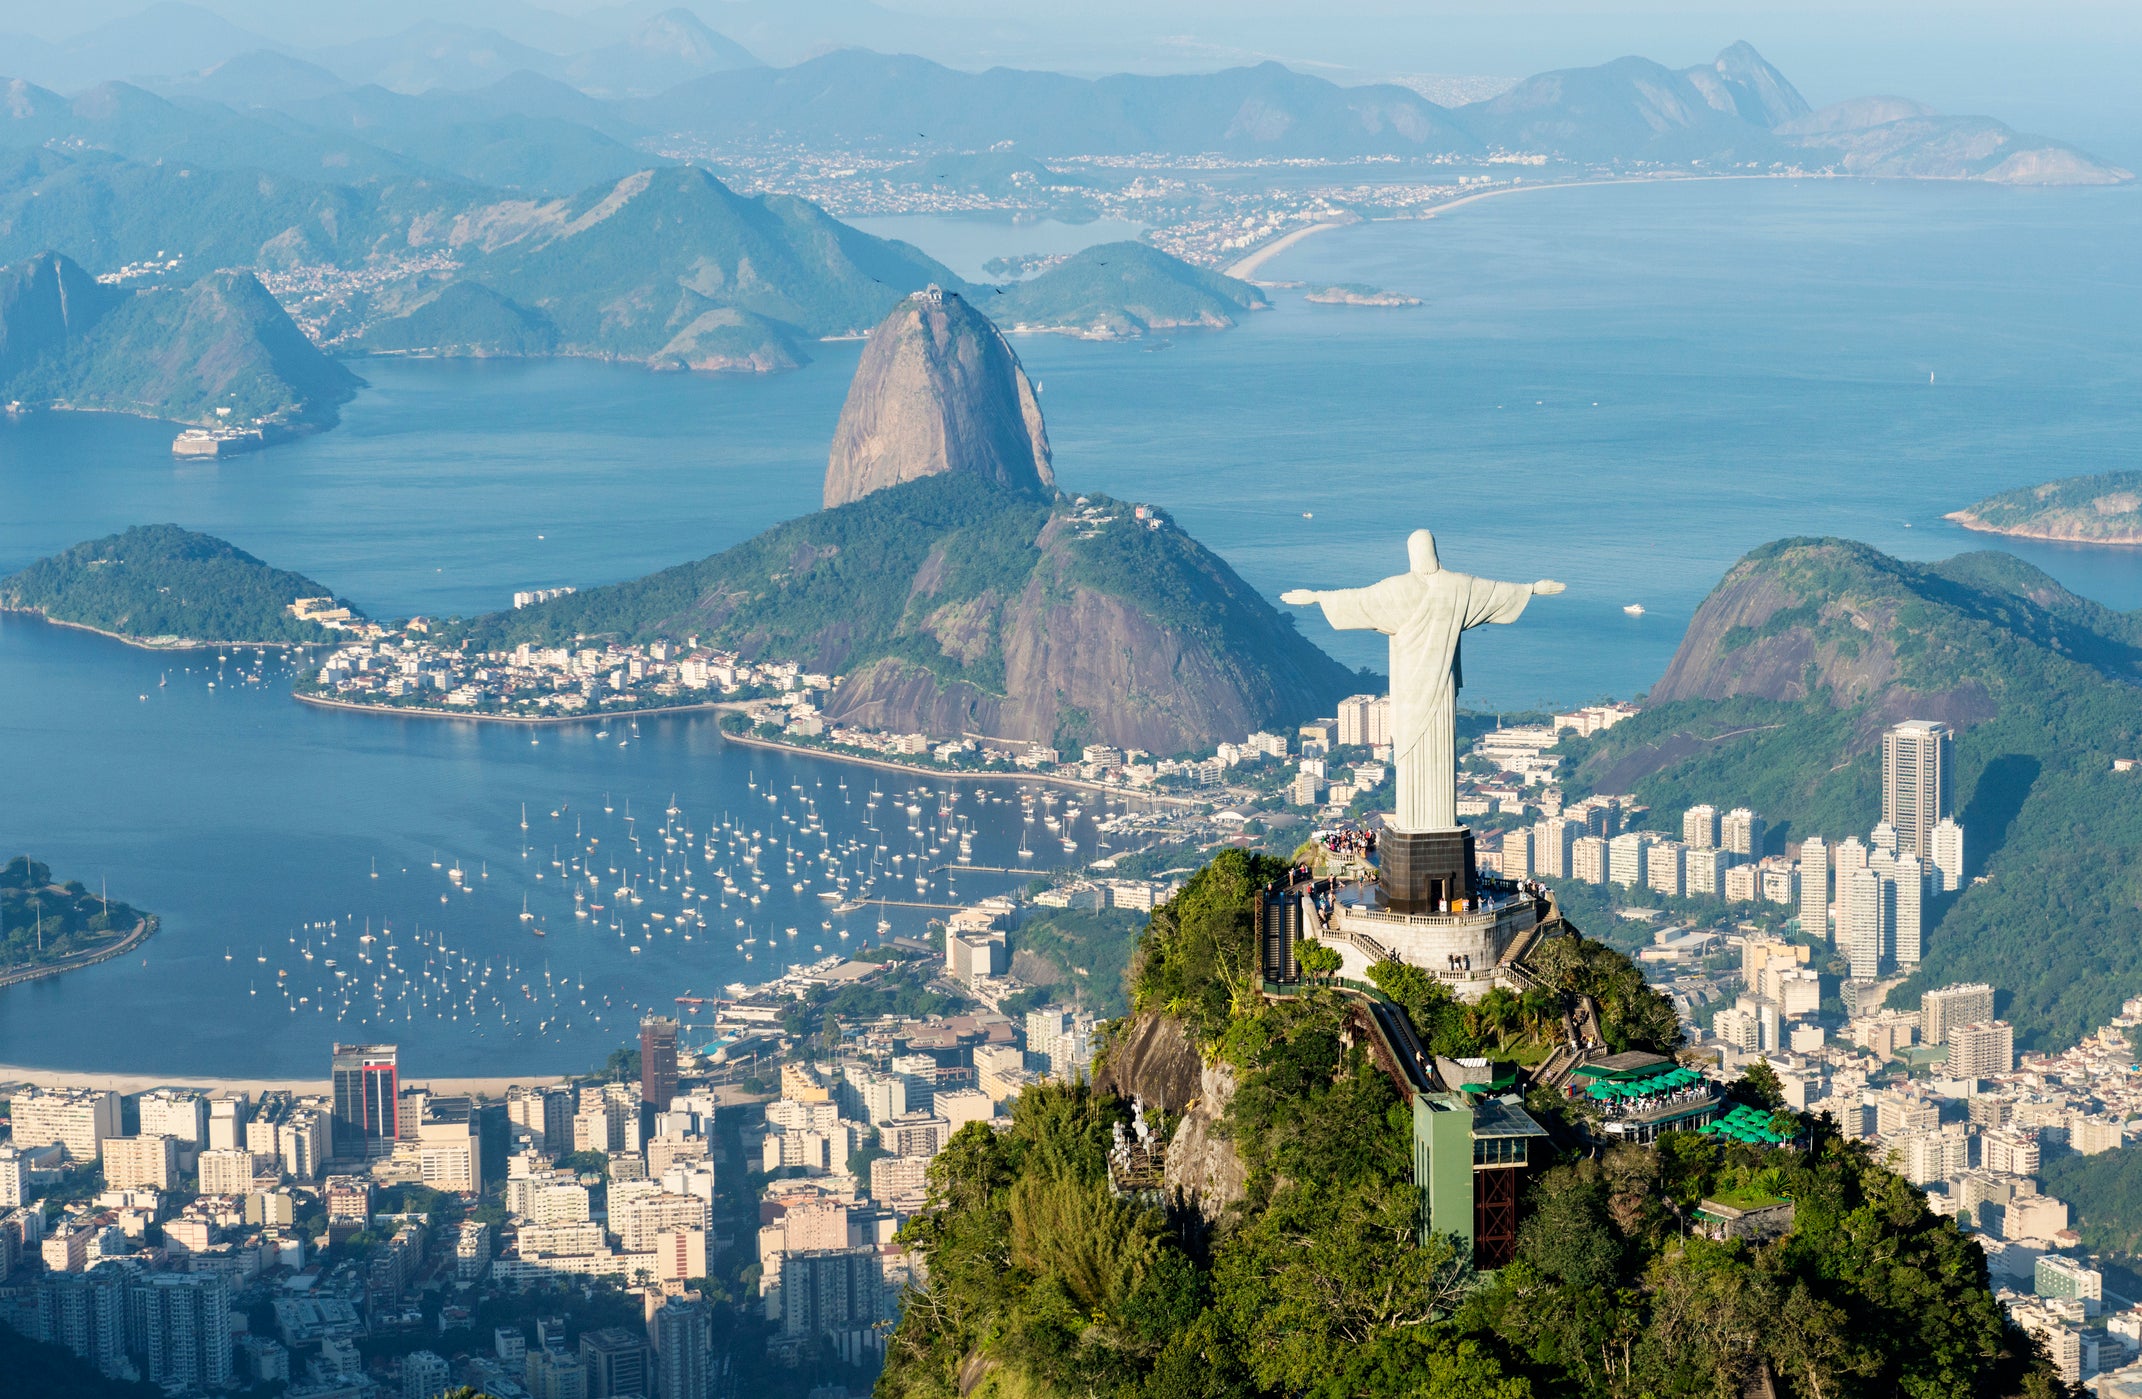 The Christ the Redeemer statue overlooks Rio de Janeiro, Brazil